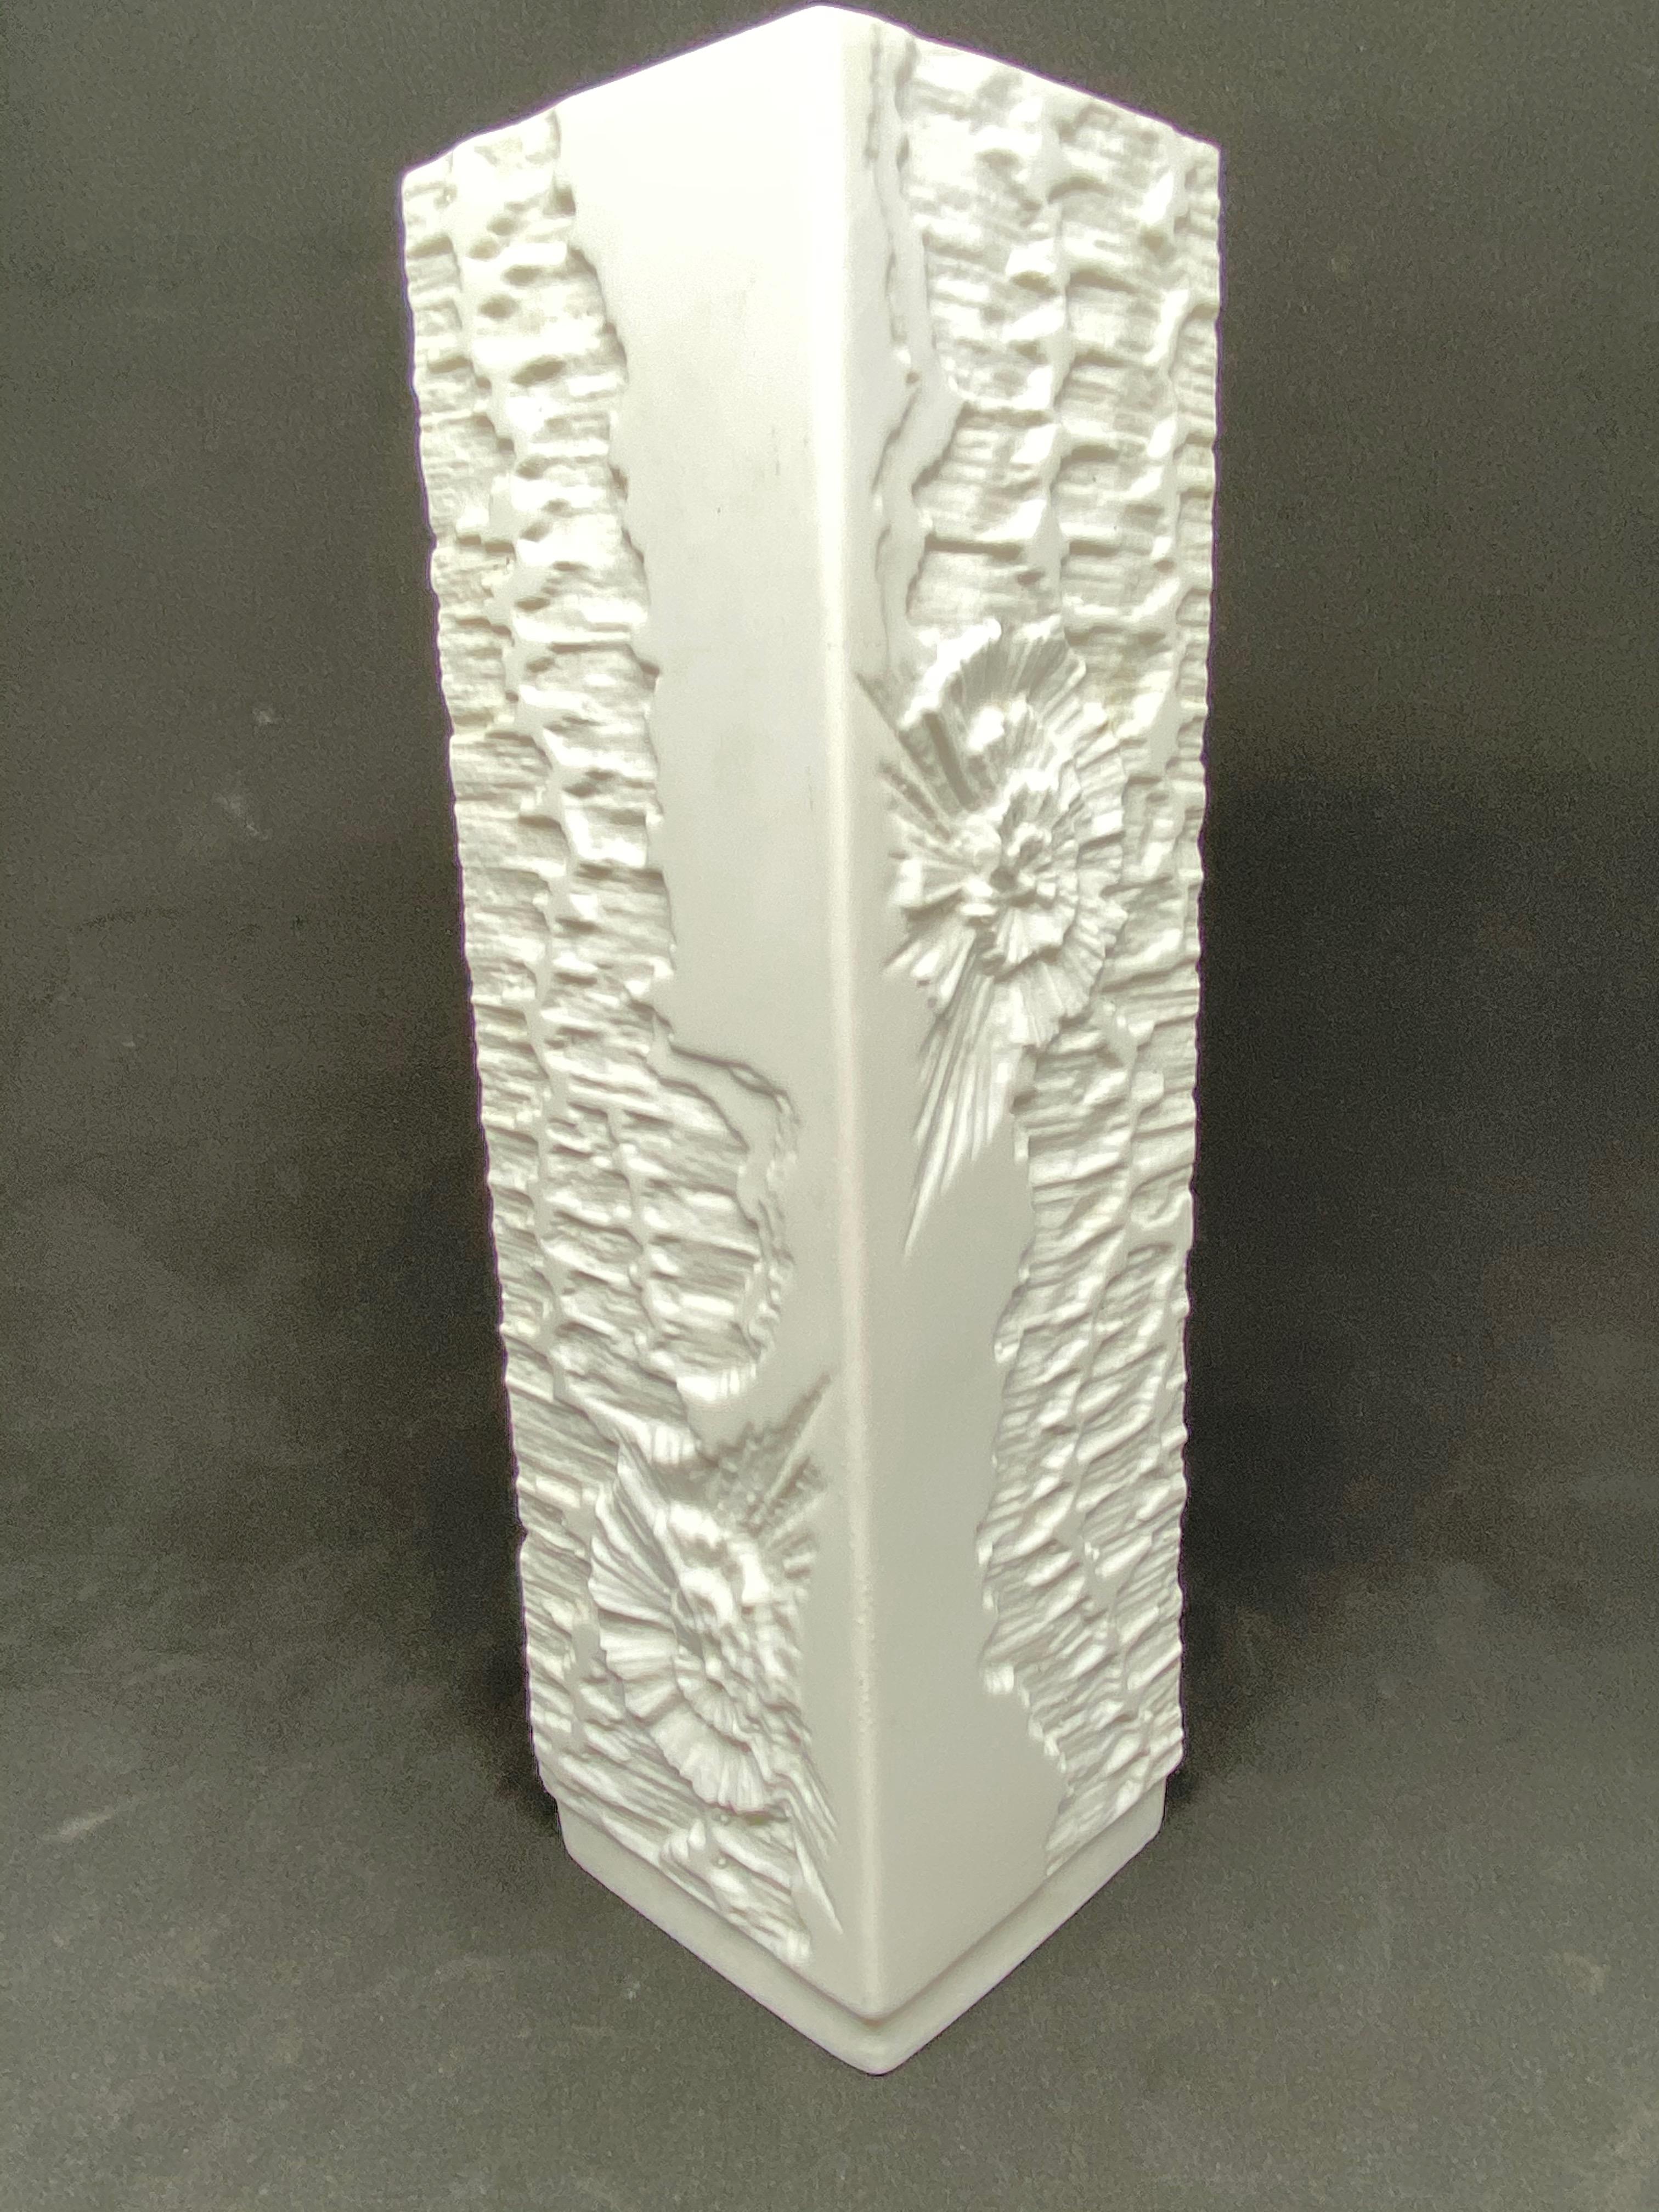 Eine erstaunliche Biskuit-Porzellan Mitte des Jahrhunderts Studio Kunst Keramik Vase in Deutschland gemacht, von Kaiser Porzellan, ca. 1970er Jahre. Die Vase ist in sehr gutem Zustand, ohne Chips, Risse oder Flohbisse. Signiert mit Manufakturzeichen